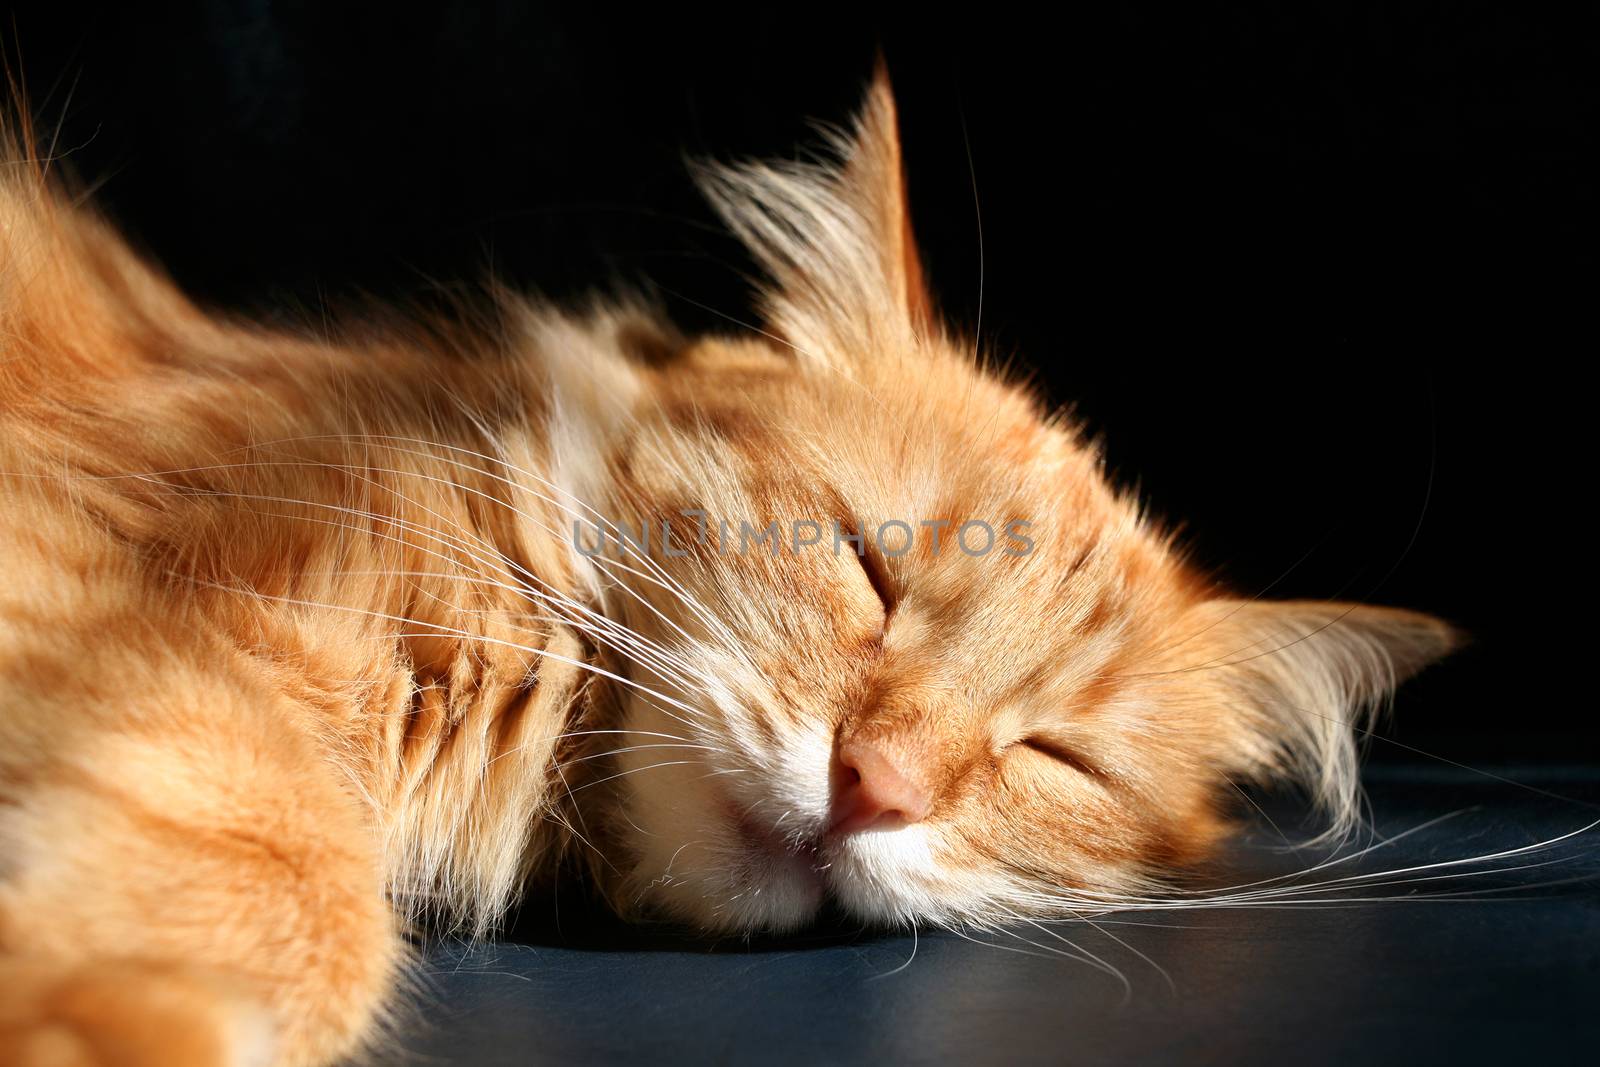 Sleeping cat by Krakatuk